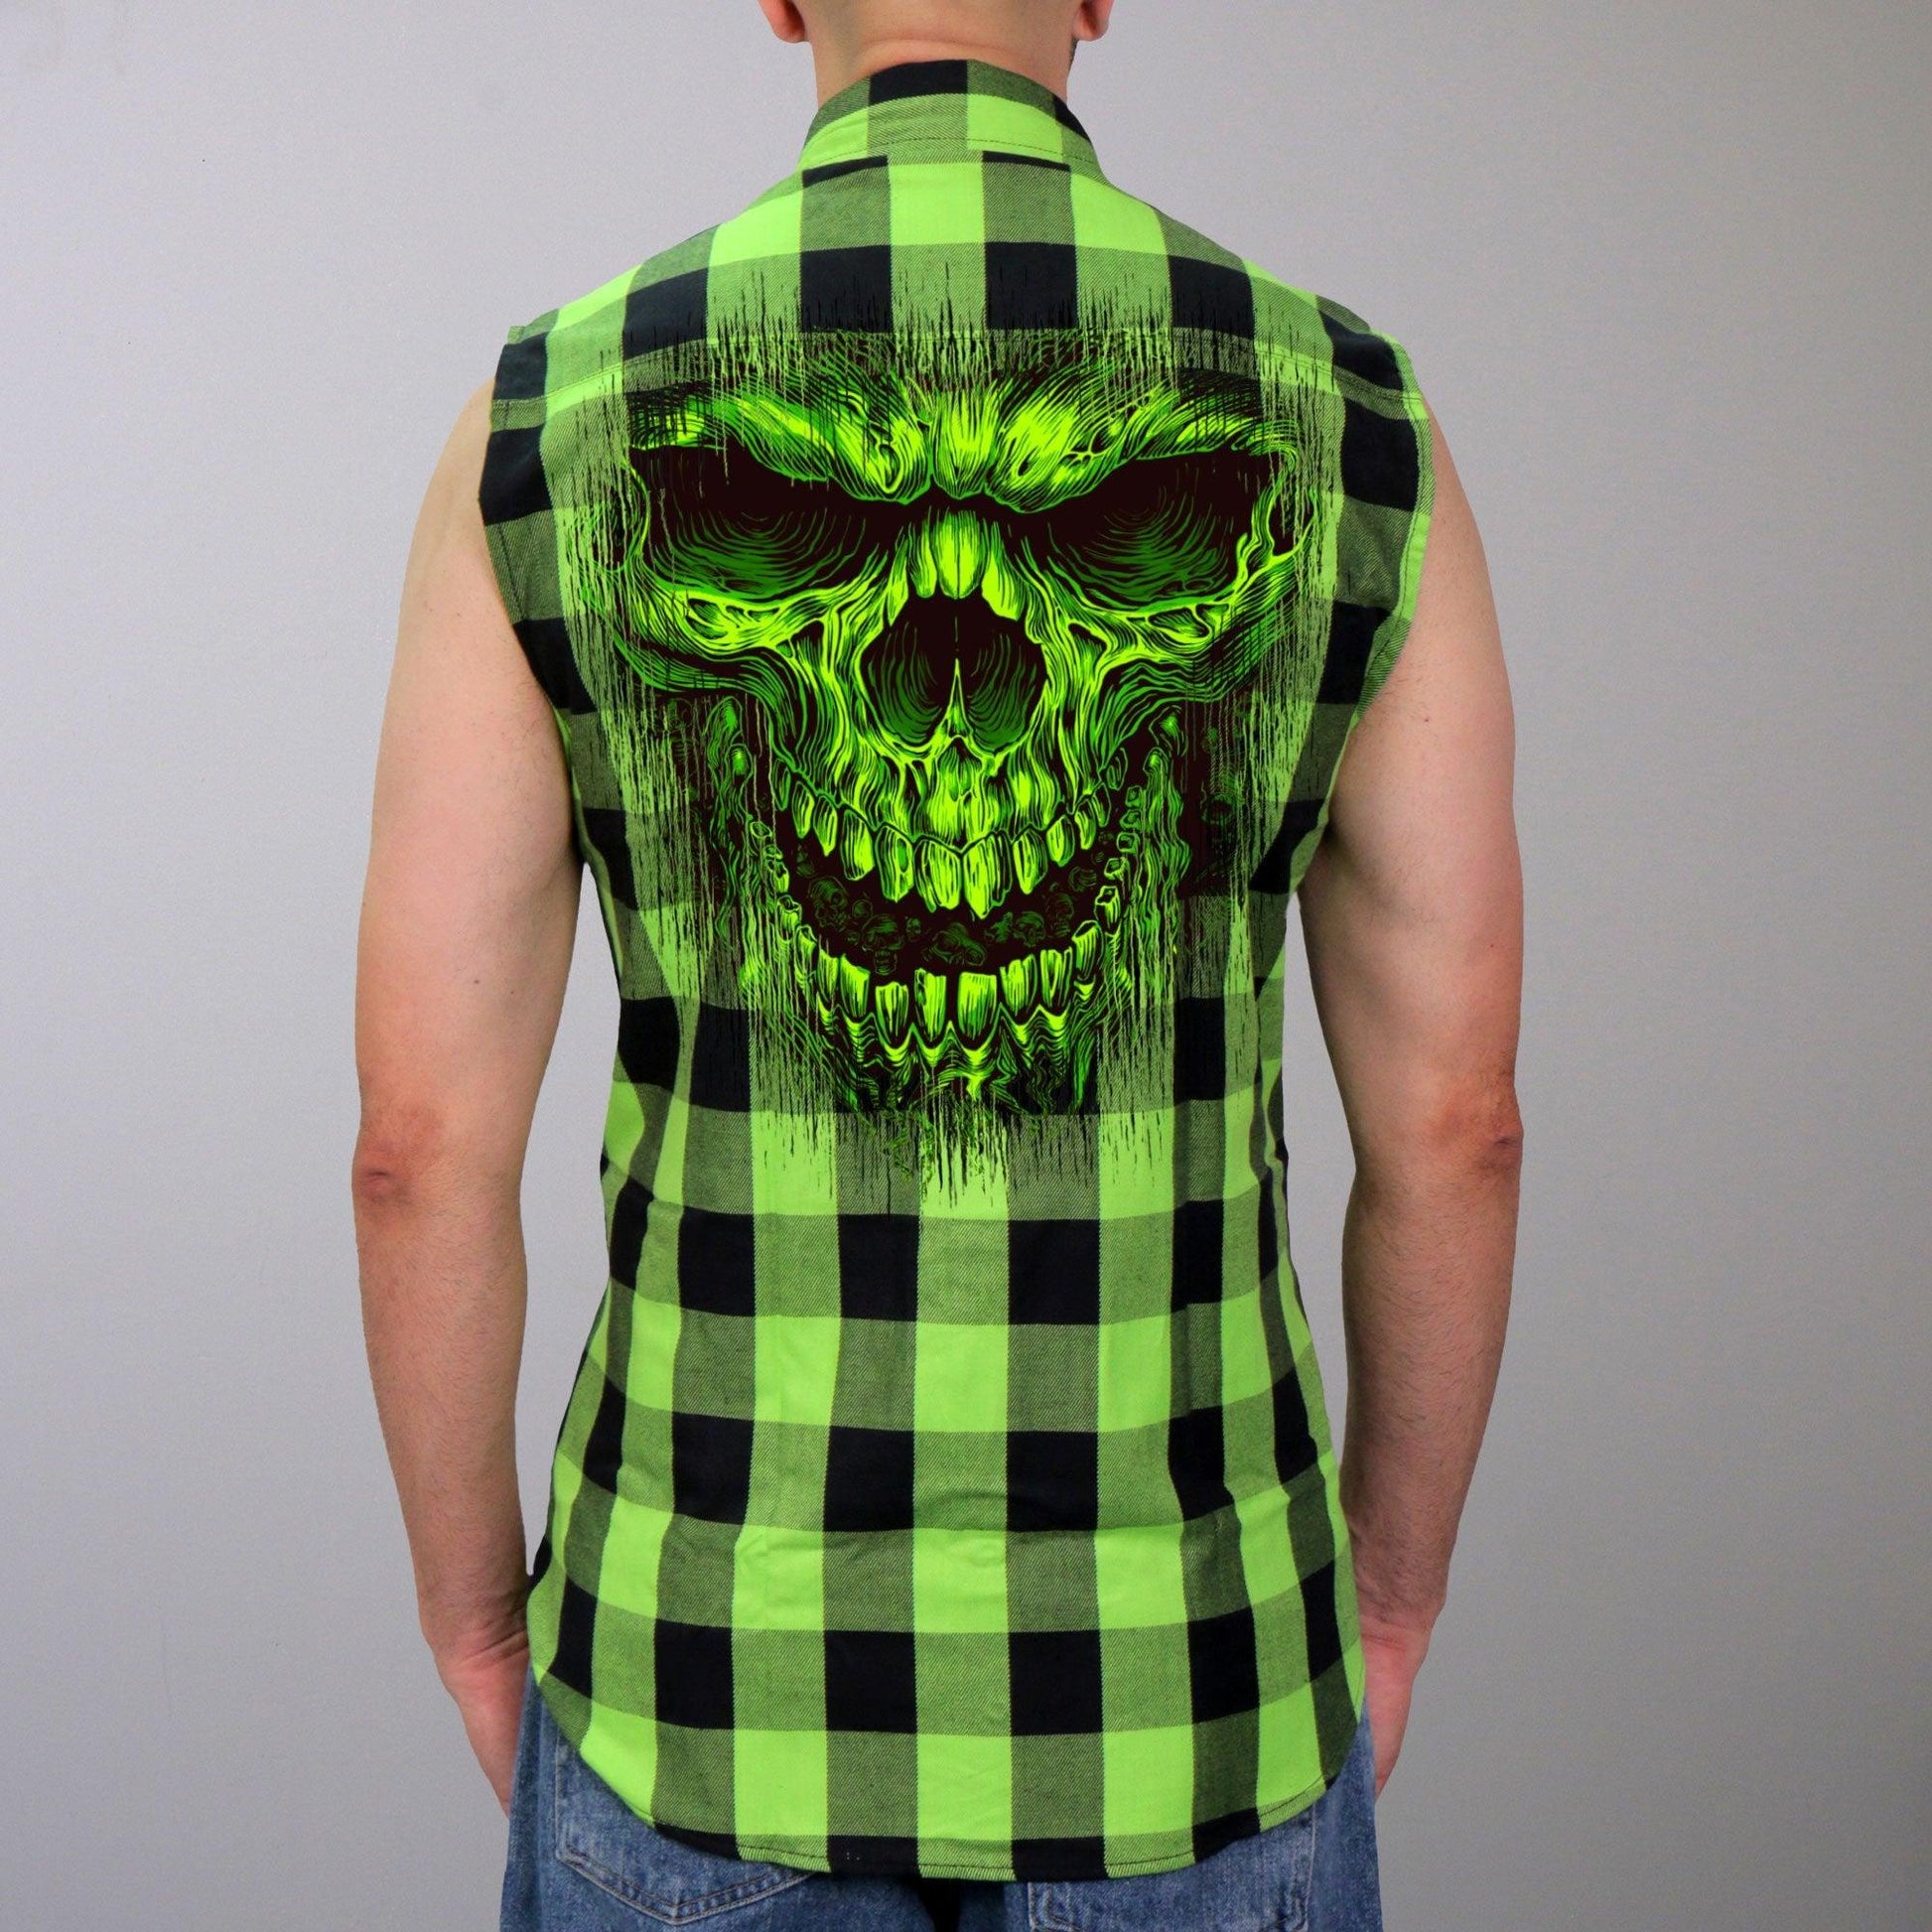 Shredder Skull Sleeveless Biker Flannel Shirt for Men - Military Republic